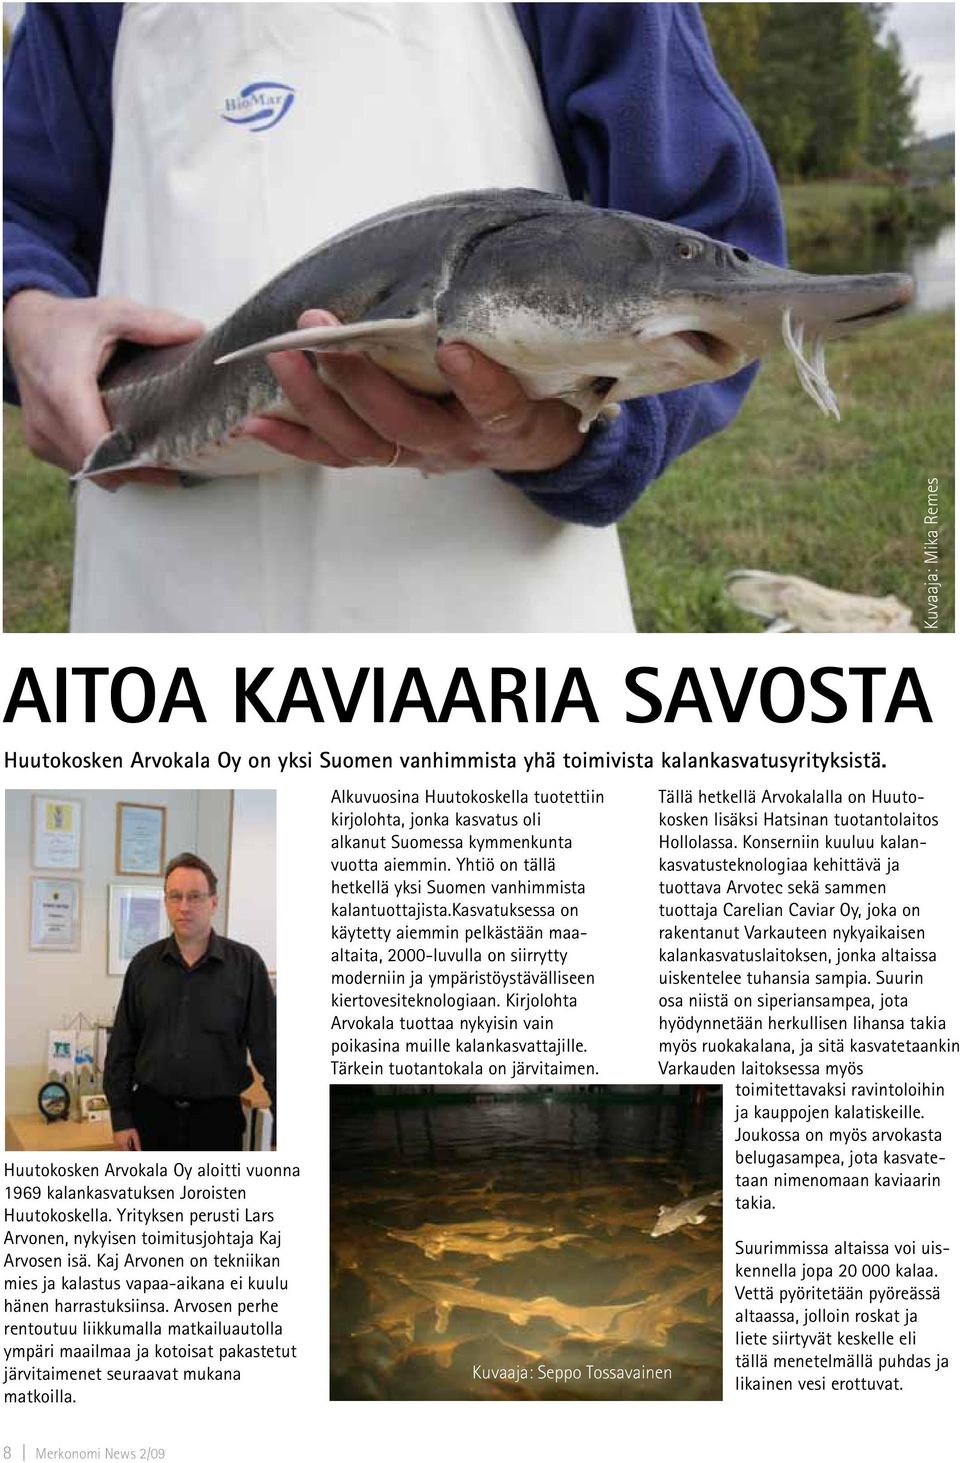 Kaj Arvonen on tekniikan mies ja kalastus vapaa-aikana ei kuulu hänen harrastuksiinsa.